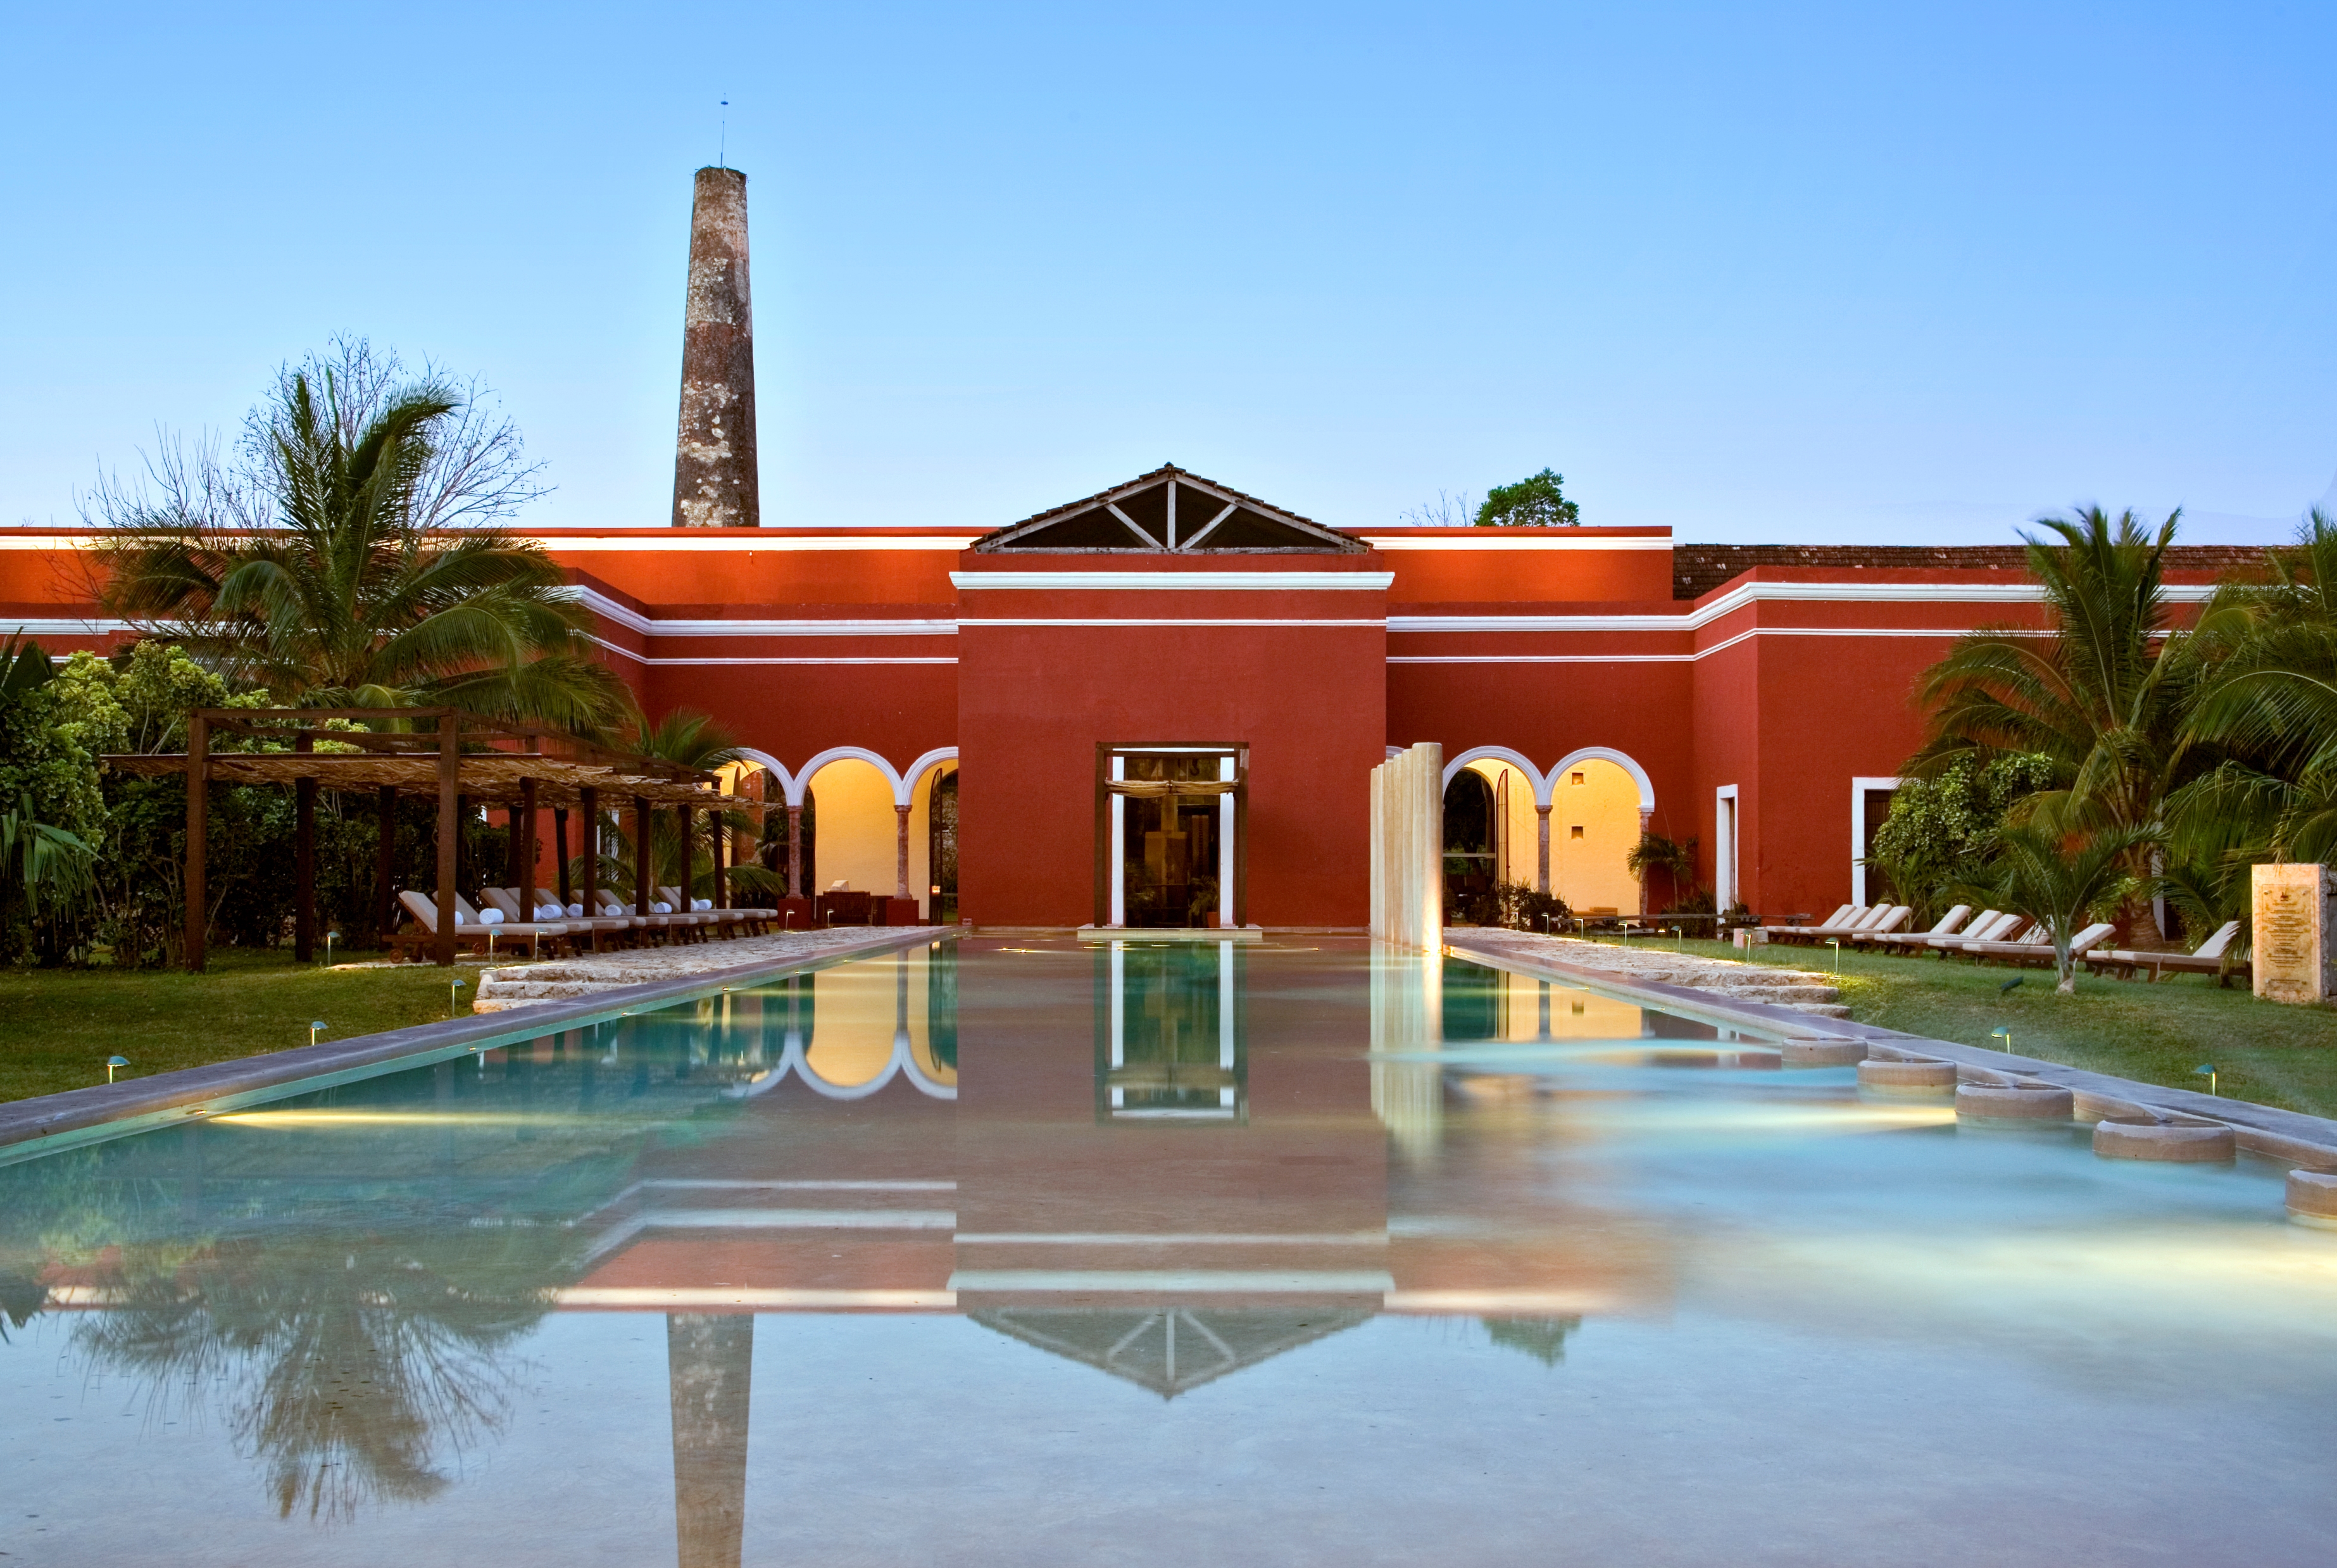 Mexiko, Hacienda Temozon, Pool, Latin America Tours, Reisen